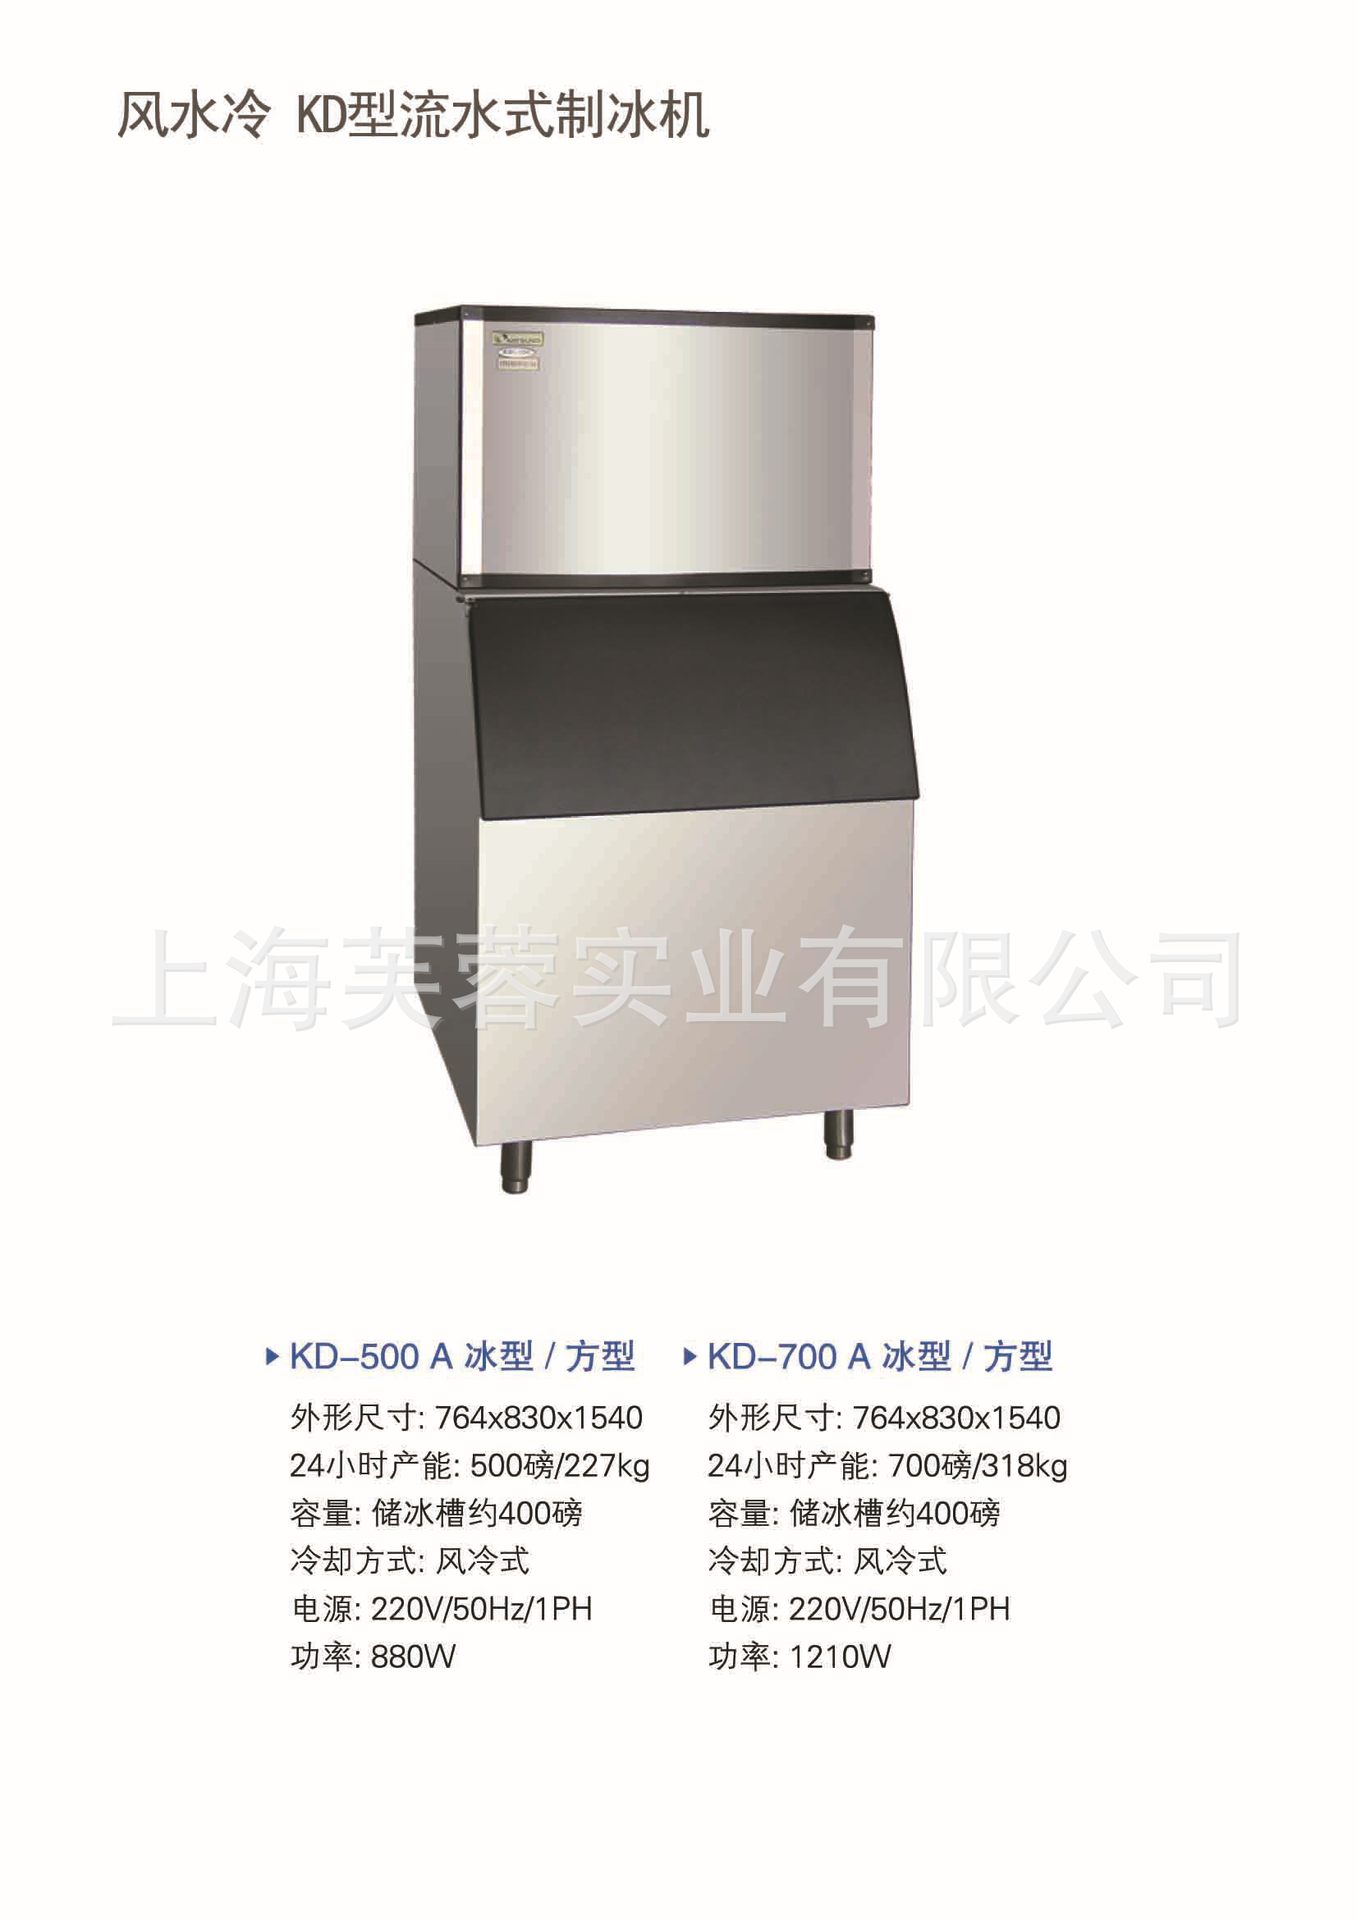 厂家直销 全自动商用制冰机 食用颗粒制冰机日产227KG